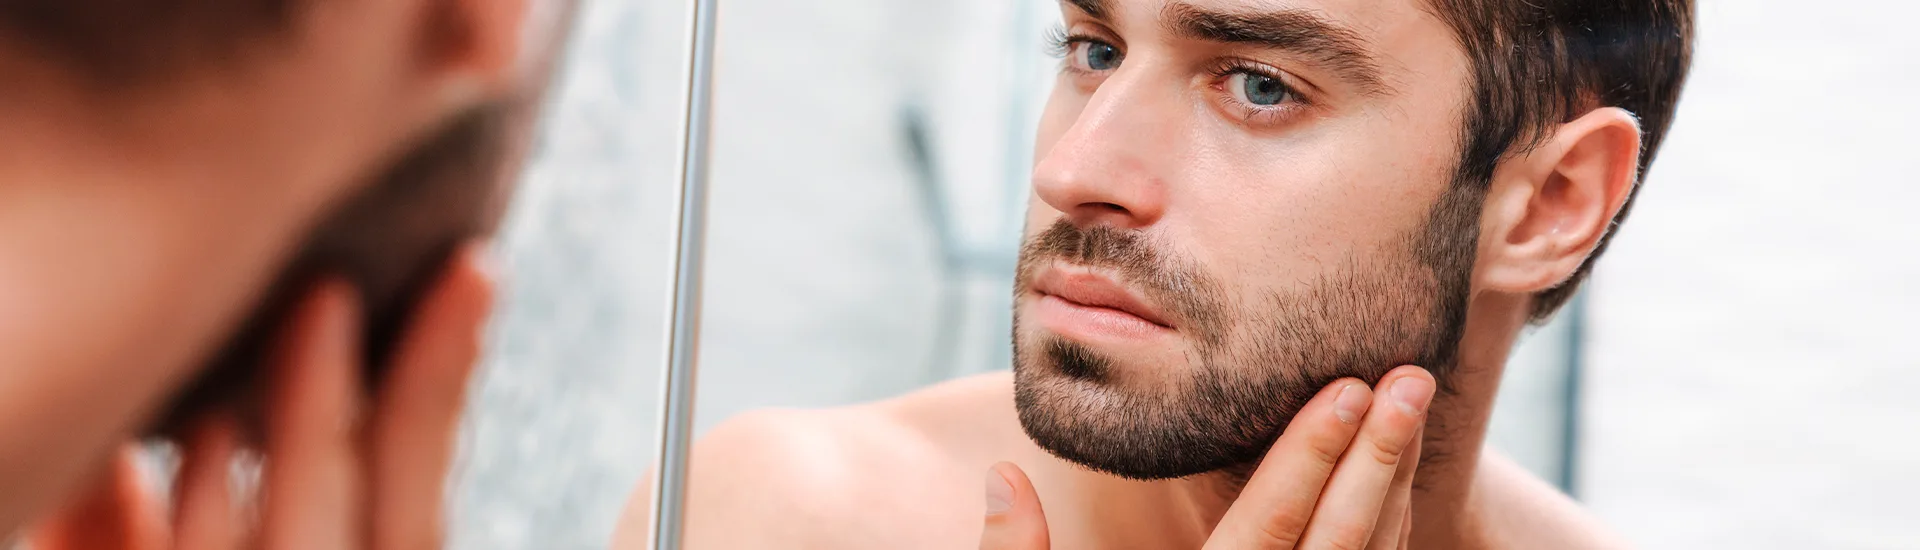 como cuidar la barba 